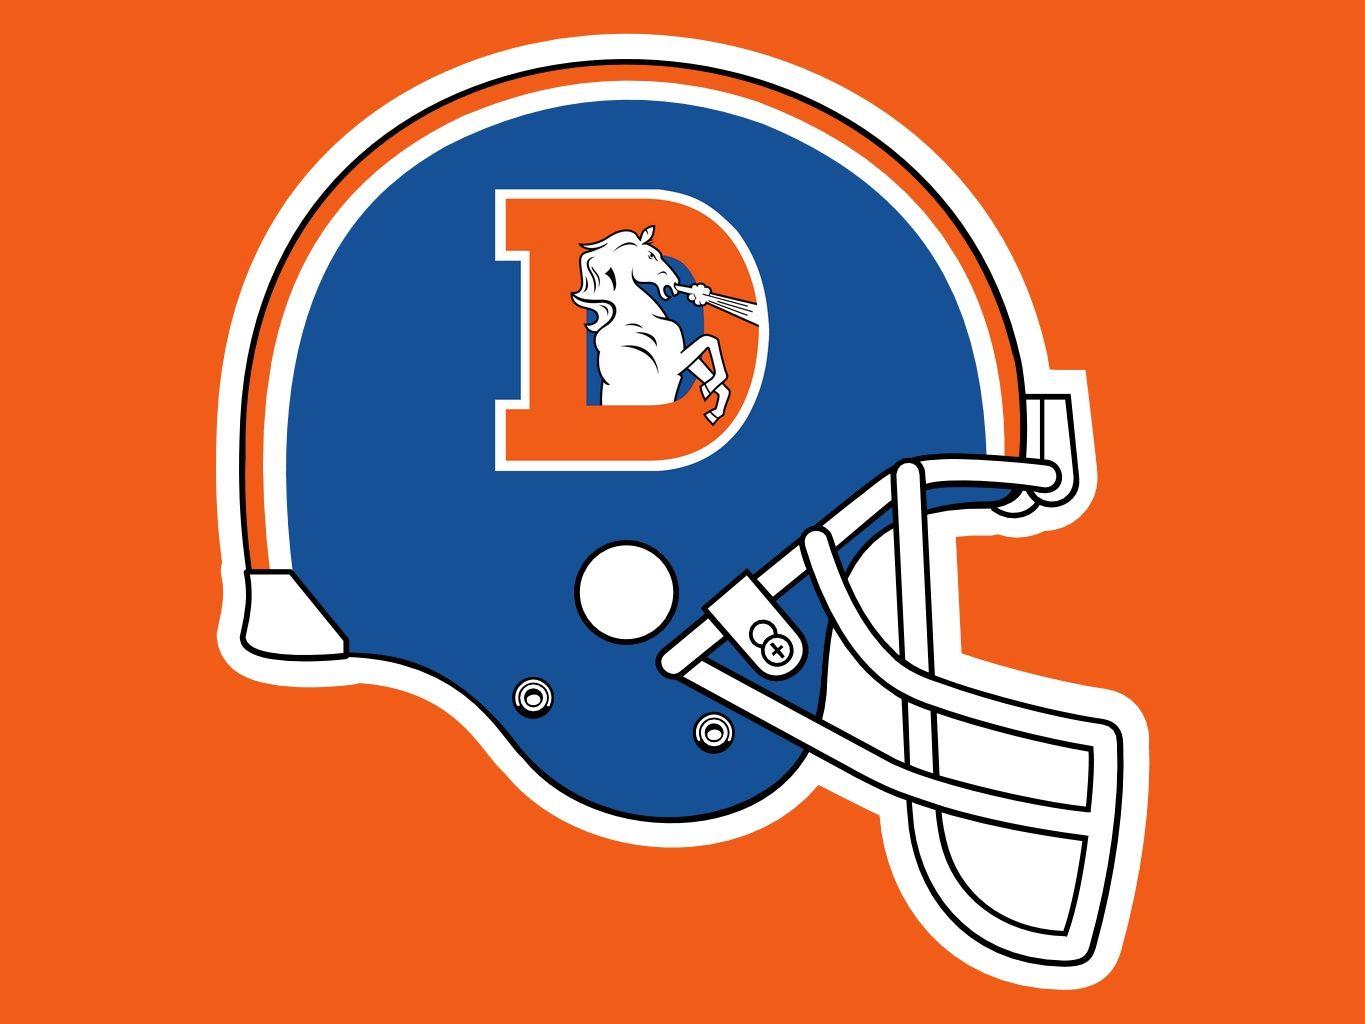 Denver Broncos Old Logo - Denver Broncos Old Helmet Logo free image